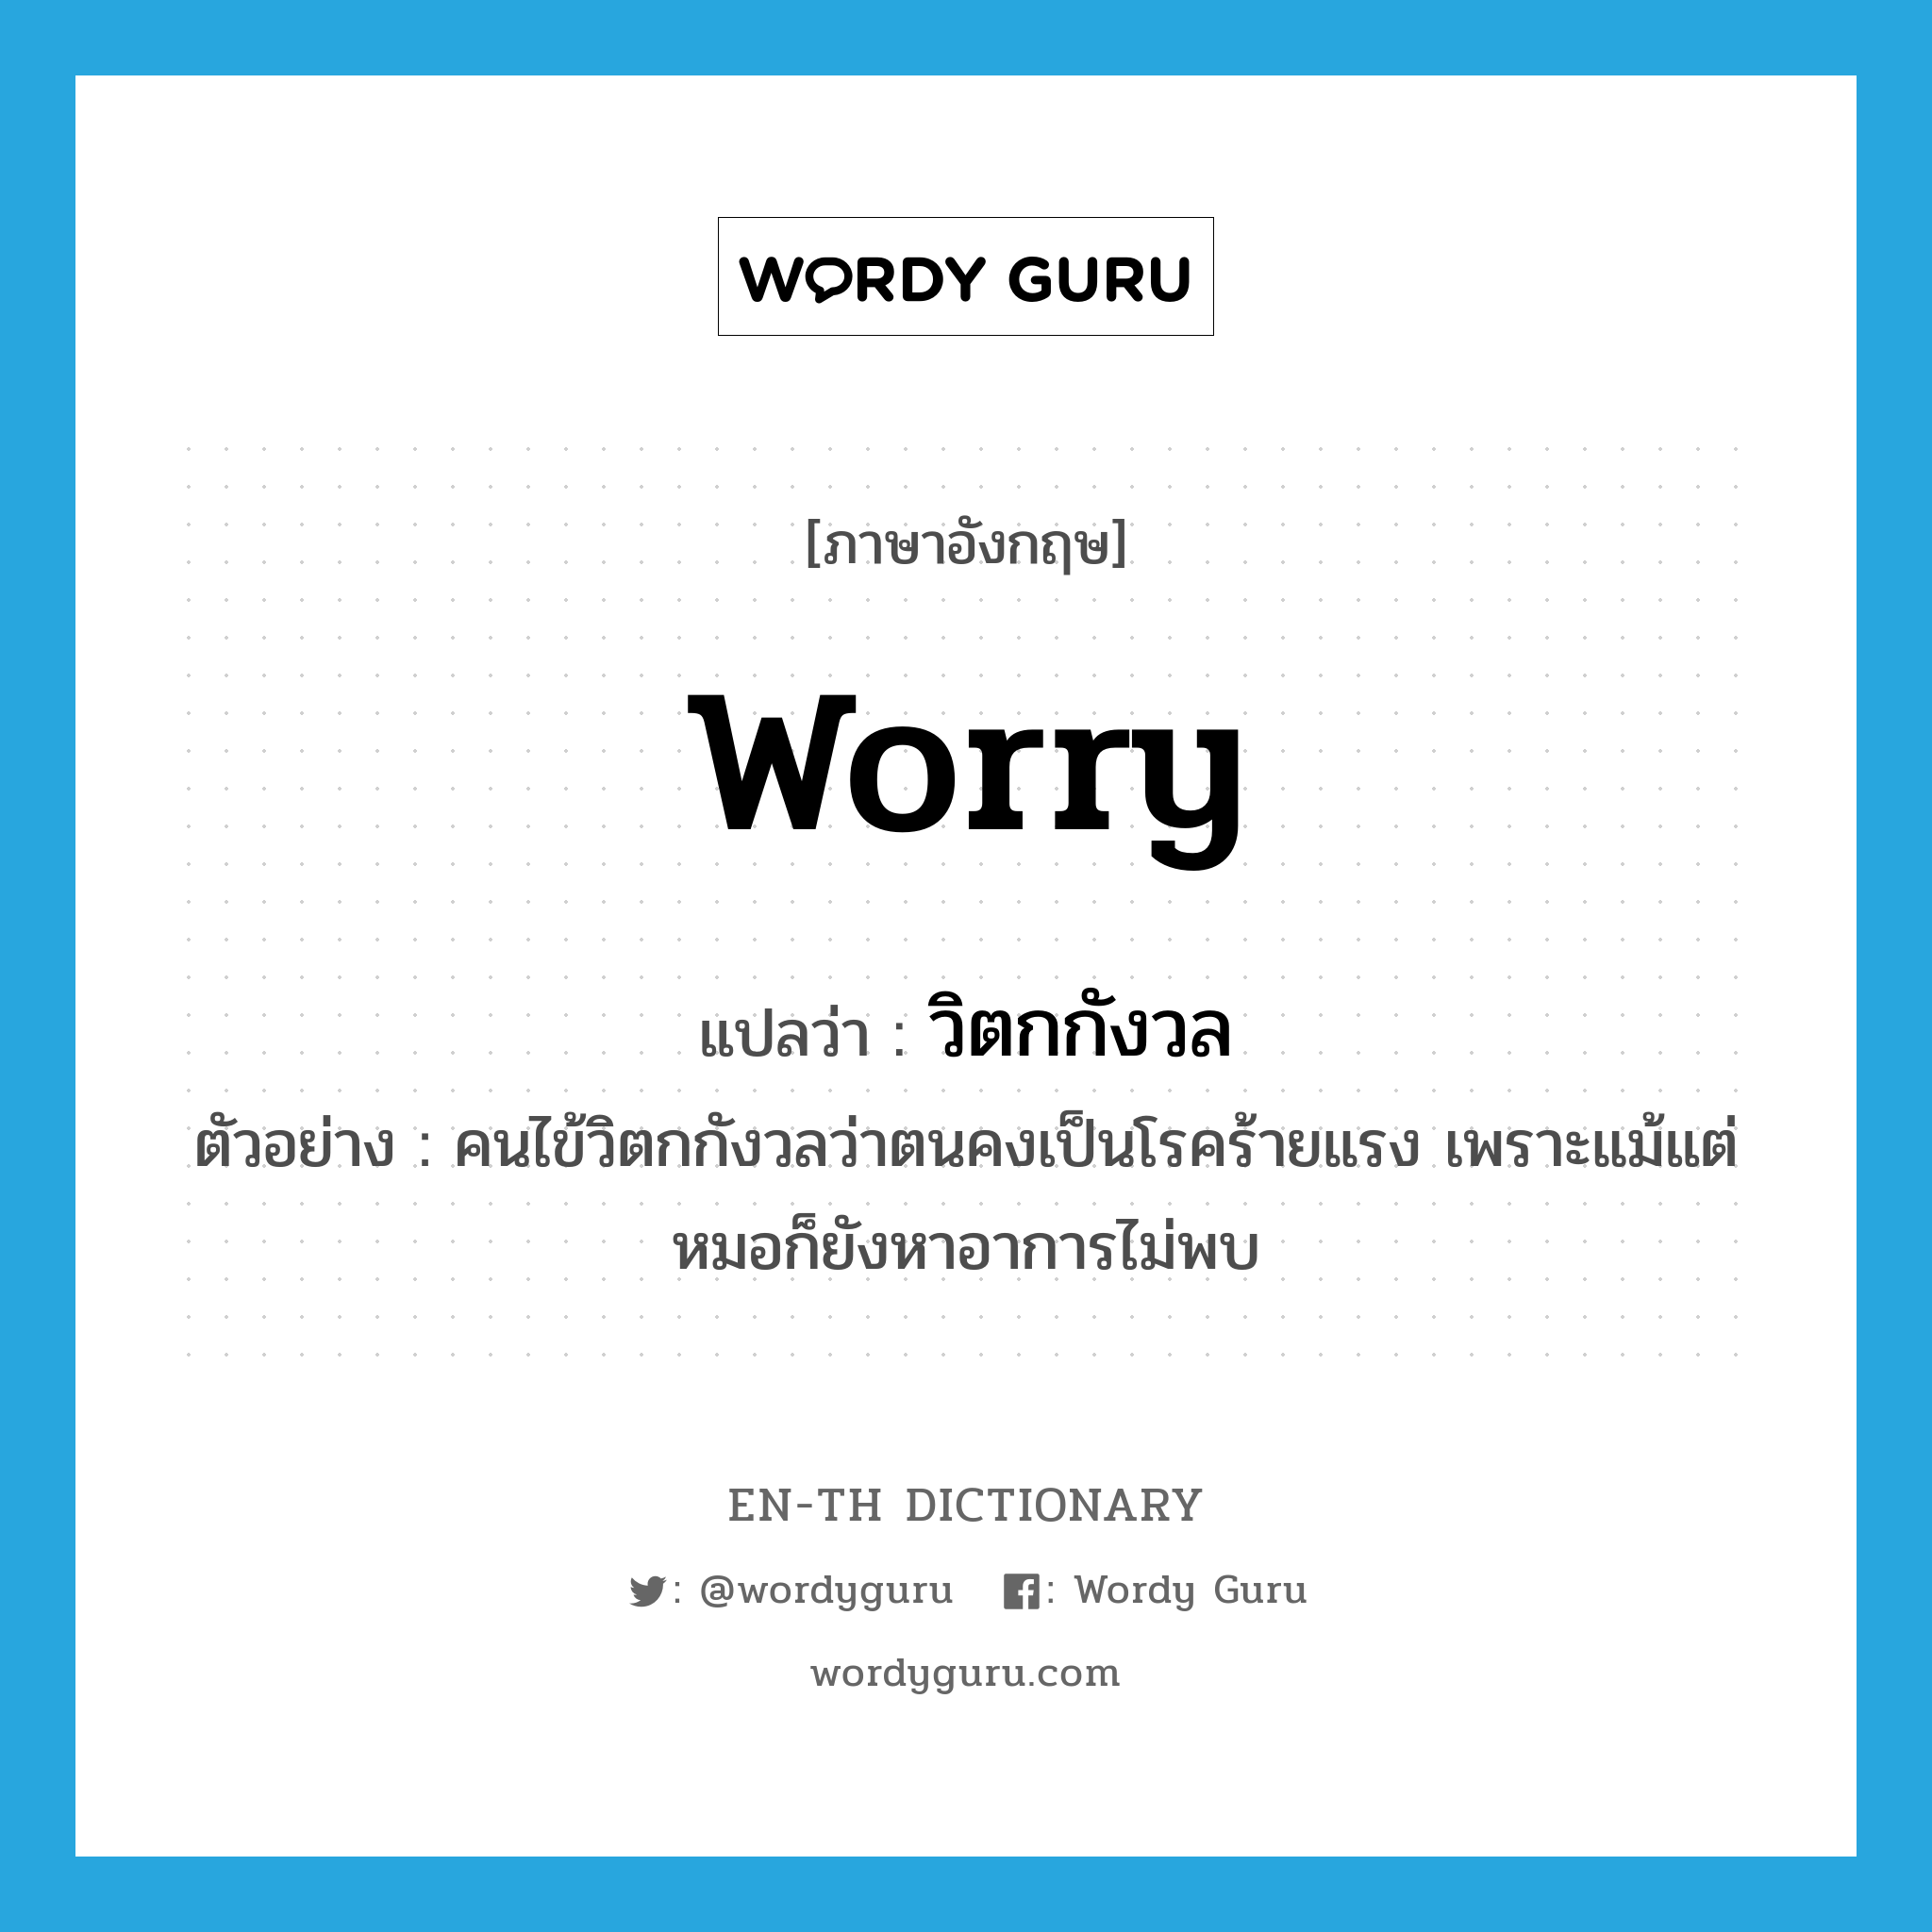 worry แปลว่า?, คำศัพท์ภาษาอังกฤษ worry แปลว่า วิตกกังวล ประเภท V ตัวอย่าง คนไข้วิตกกังวลว่าตนคงเป็นโรคร้ายแรง เพราะแม้แต่หมอก็ยังหาอาการไม่พบ หมวด V